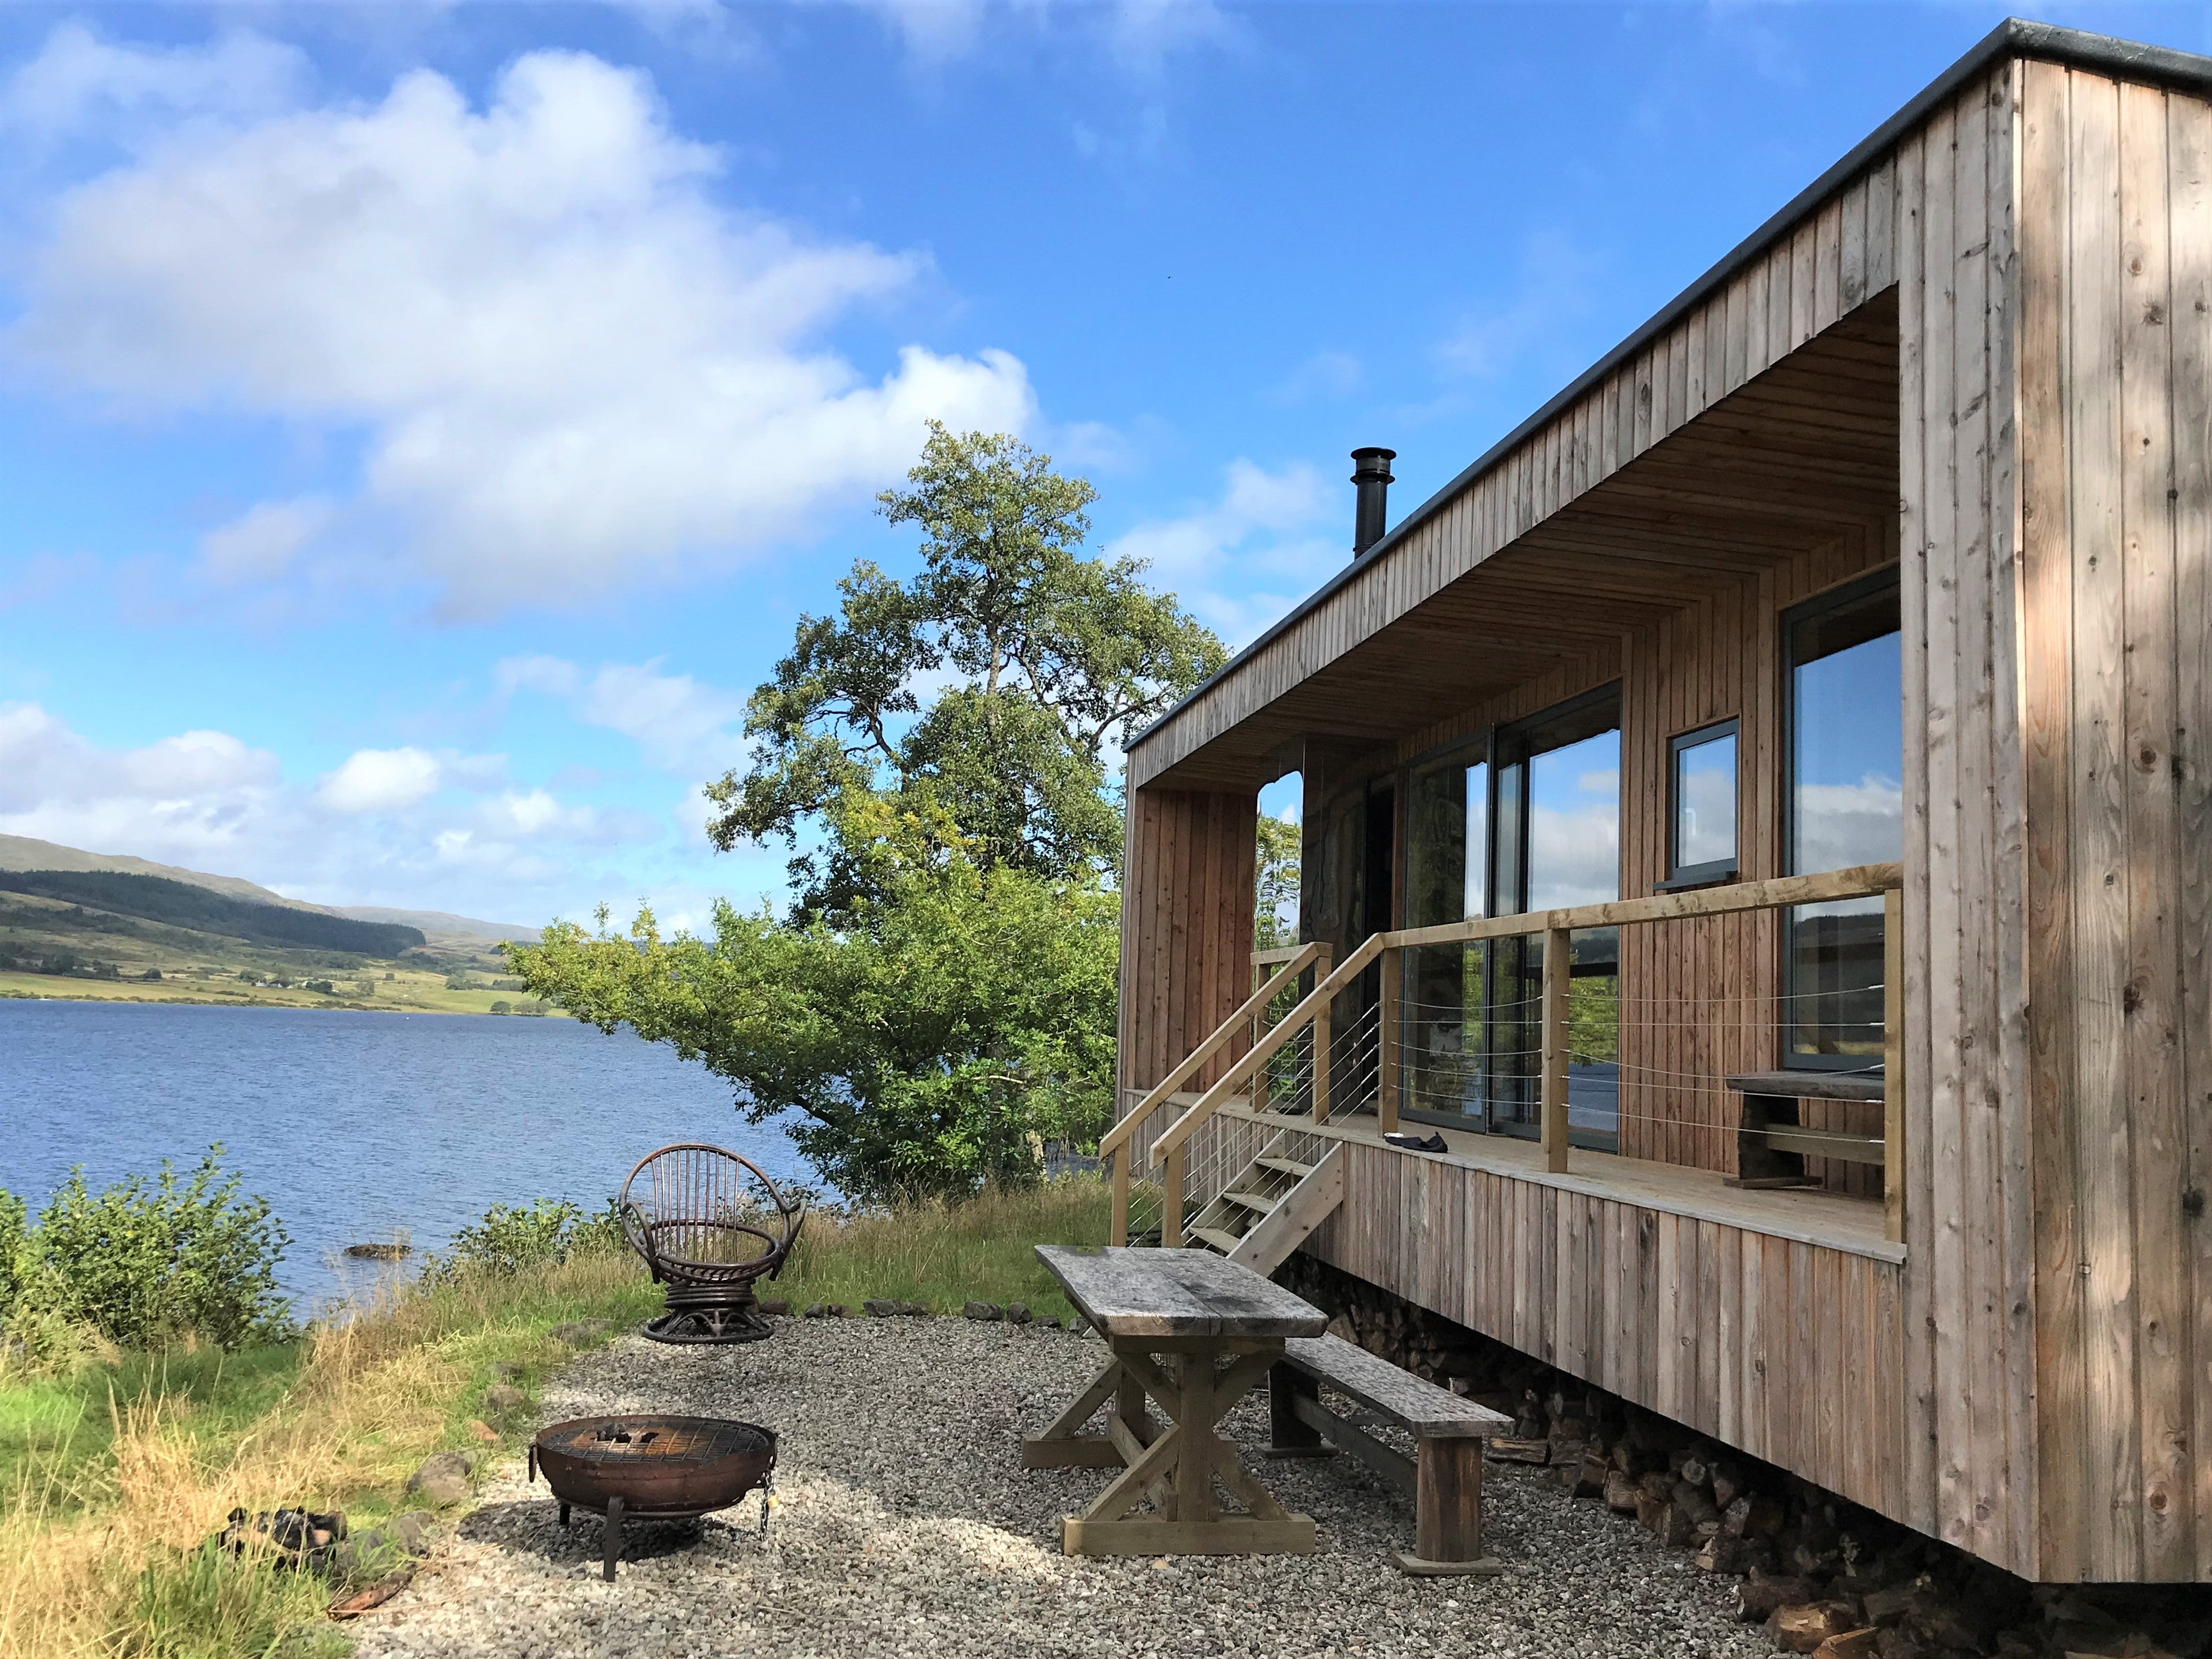 The ‘Rowan’ cabin at Loch Venachar